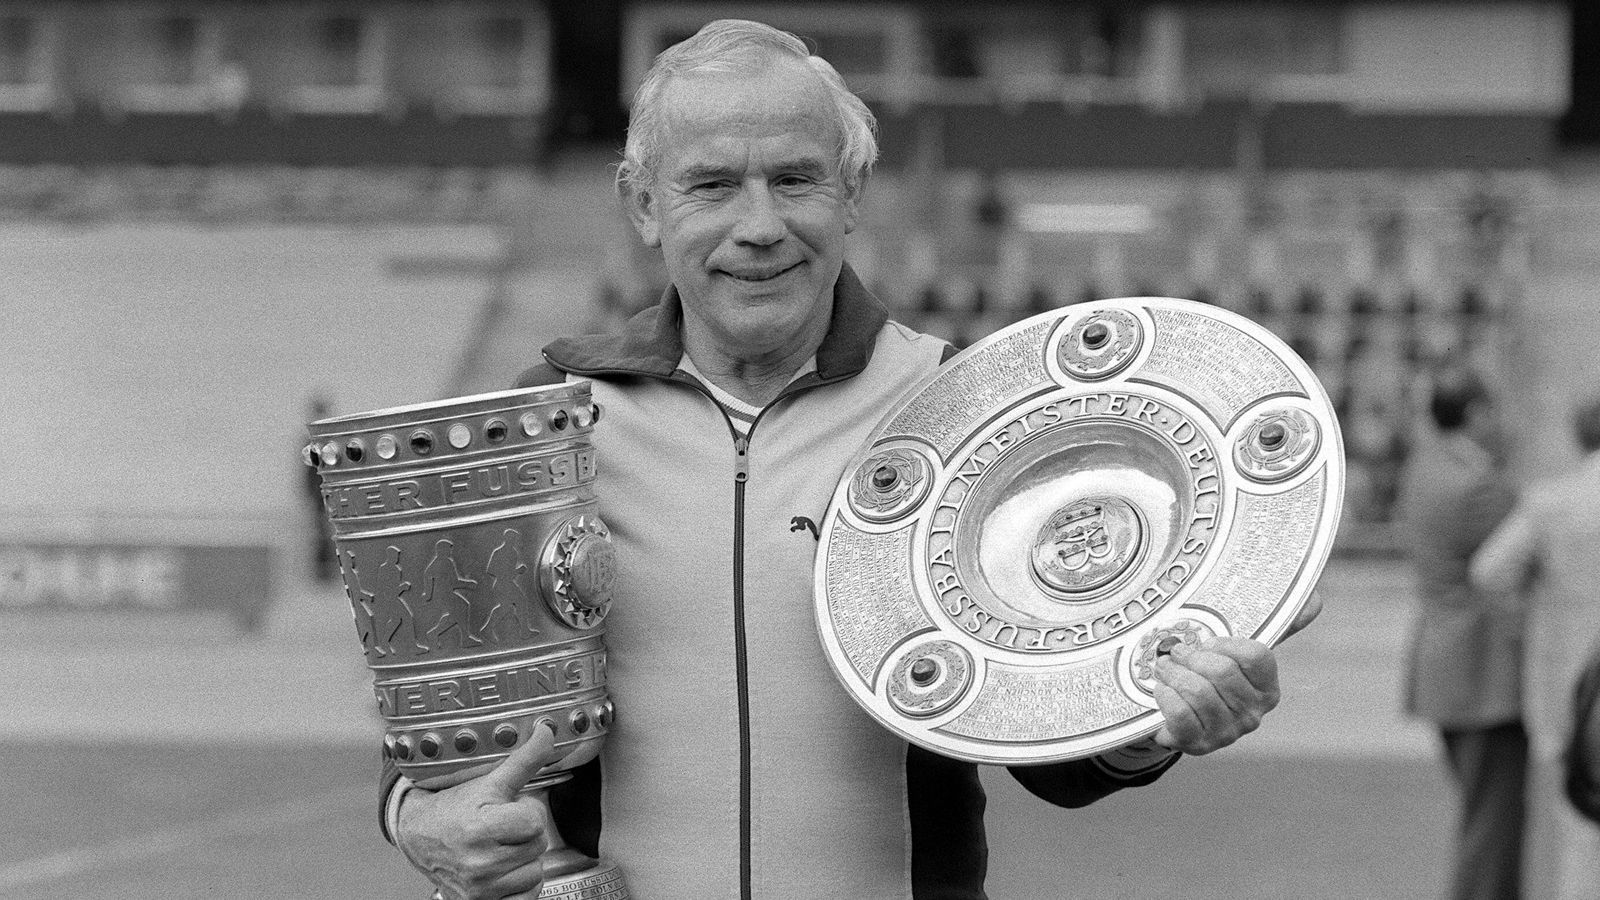 <strong>Platz 8: Hennes Weisweiler (469 Bundesliga-Spiele)</strong><br>
                Hennes Weisweiler konnte mit Borussia Mönchengladbach drei Meistertitel und einen Pokalsieg feiern, mit dem 1. FC Köln einen Meistertitel und zwei Pokalsiege. In den 1970er Jahren galt Weisweiler als einer der besten Vereinstrainer der Welt. Im Juli 1983 starb Weisweiler im Alter von 63 Jahren an einem Herzinfarkt.&nbsp;